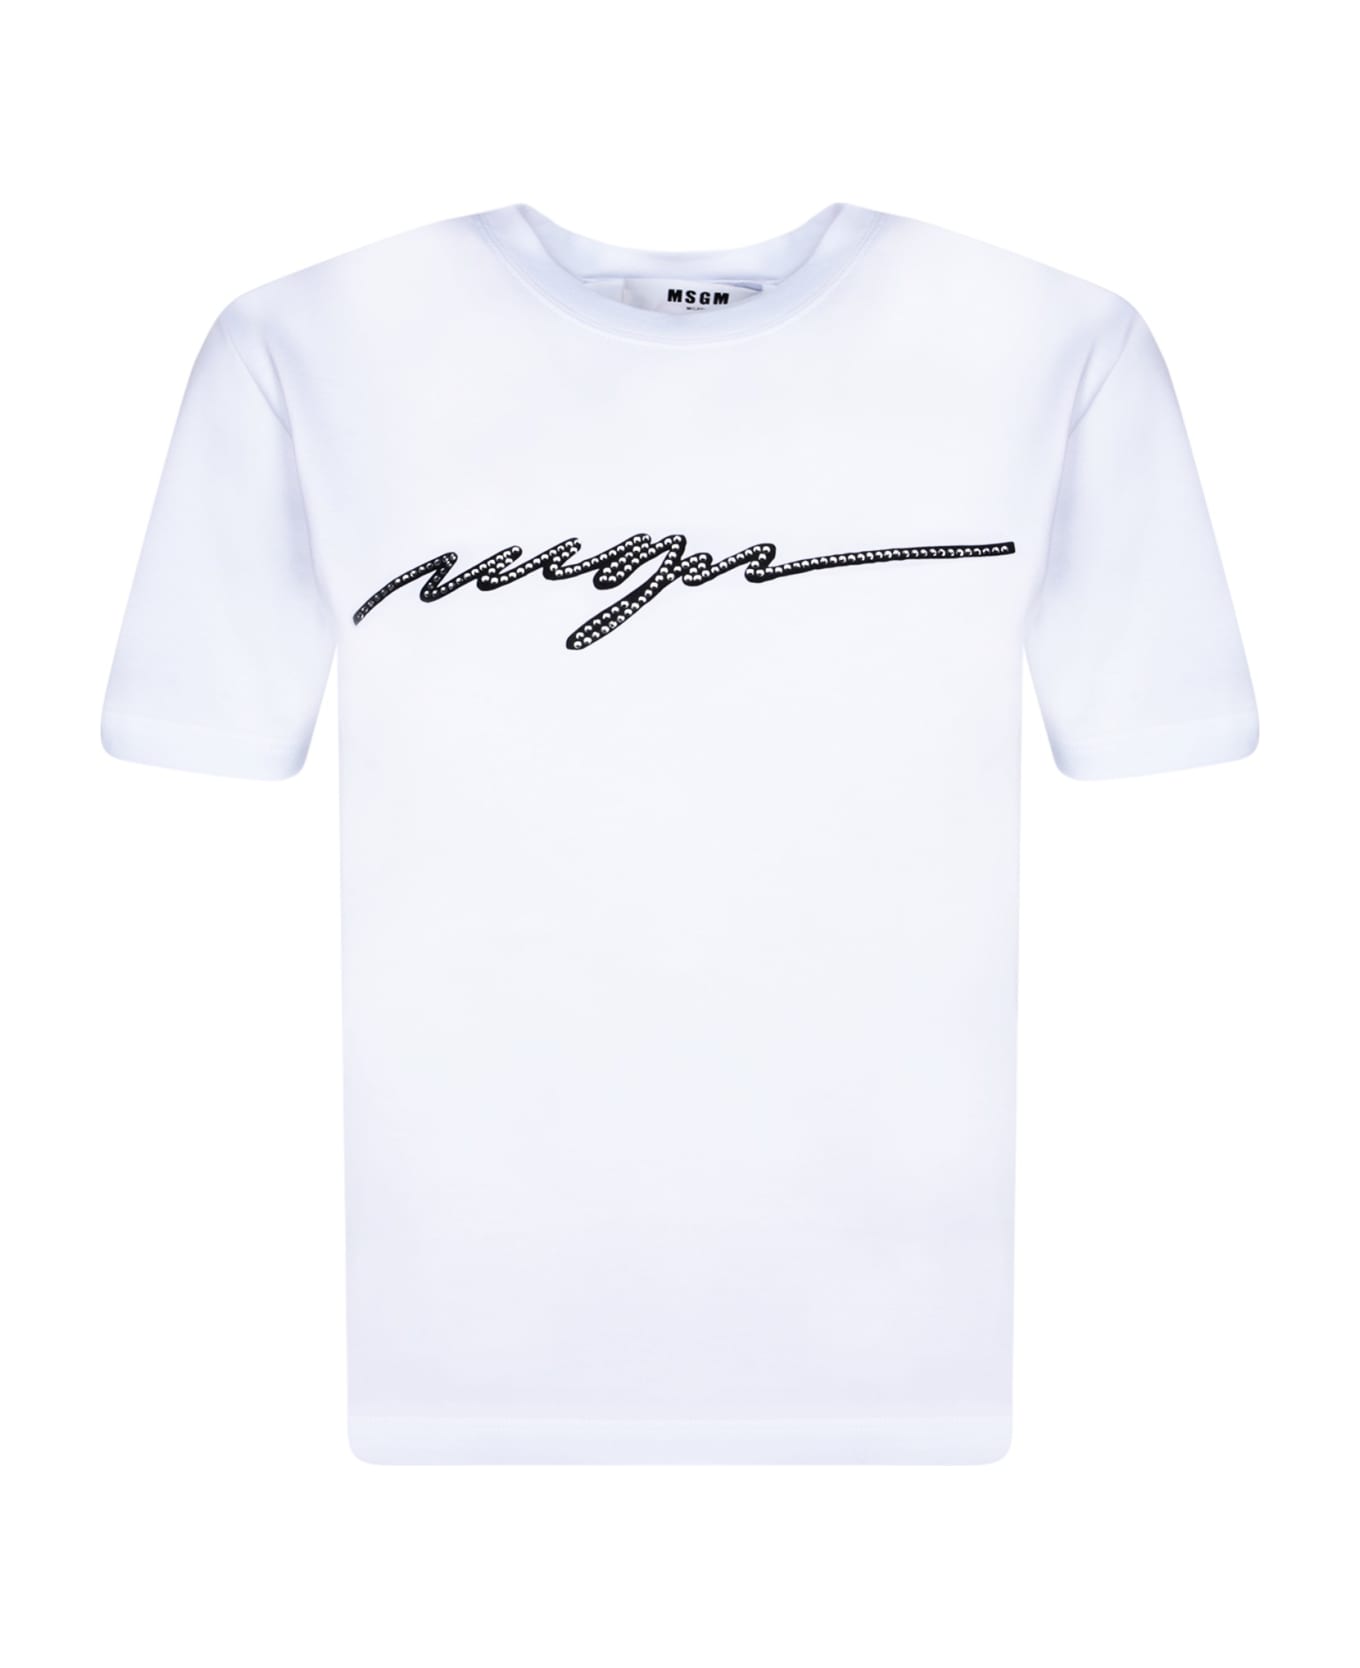 MSGM Logo White T-shirt - White Tシャツ